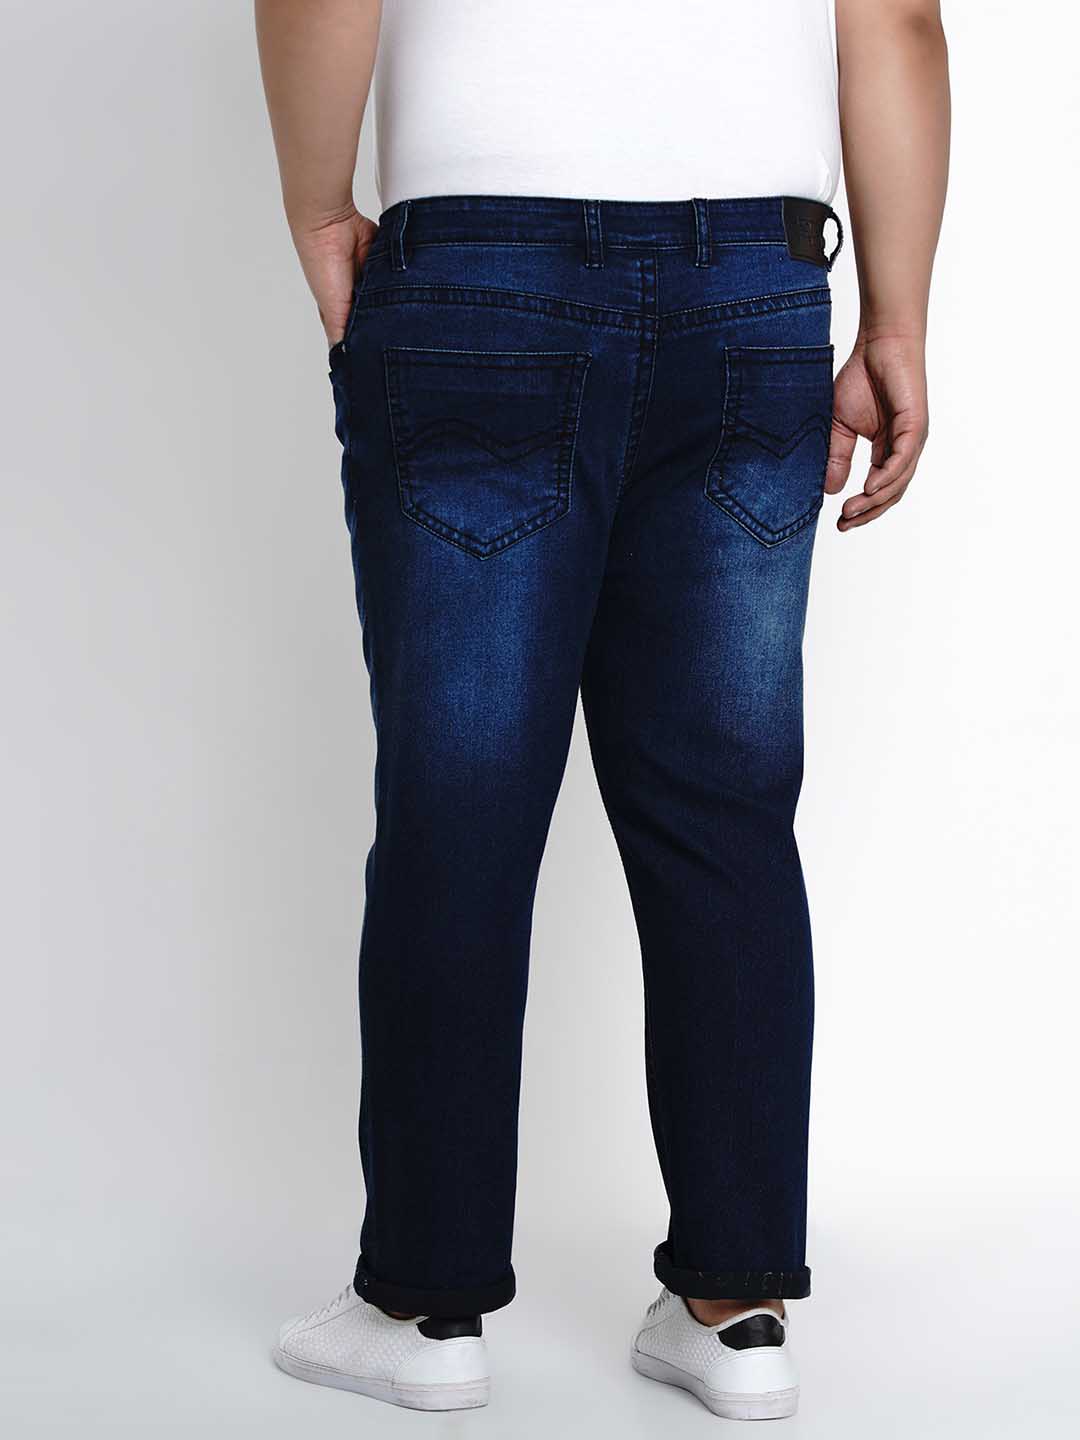 bottomwear/jeans/BEPLJPJ2504/bepljpj2504-5.jpg